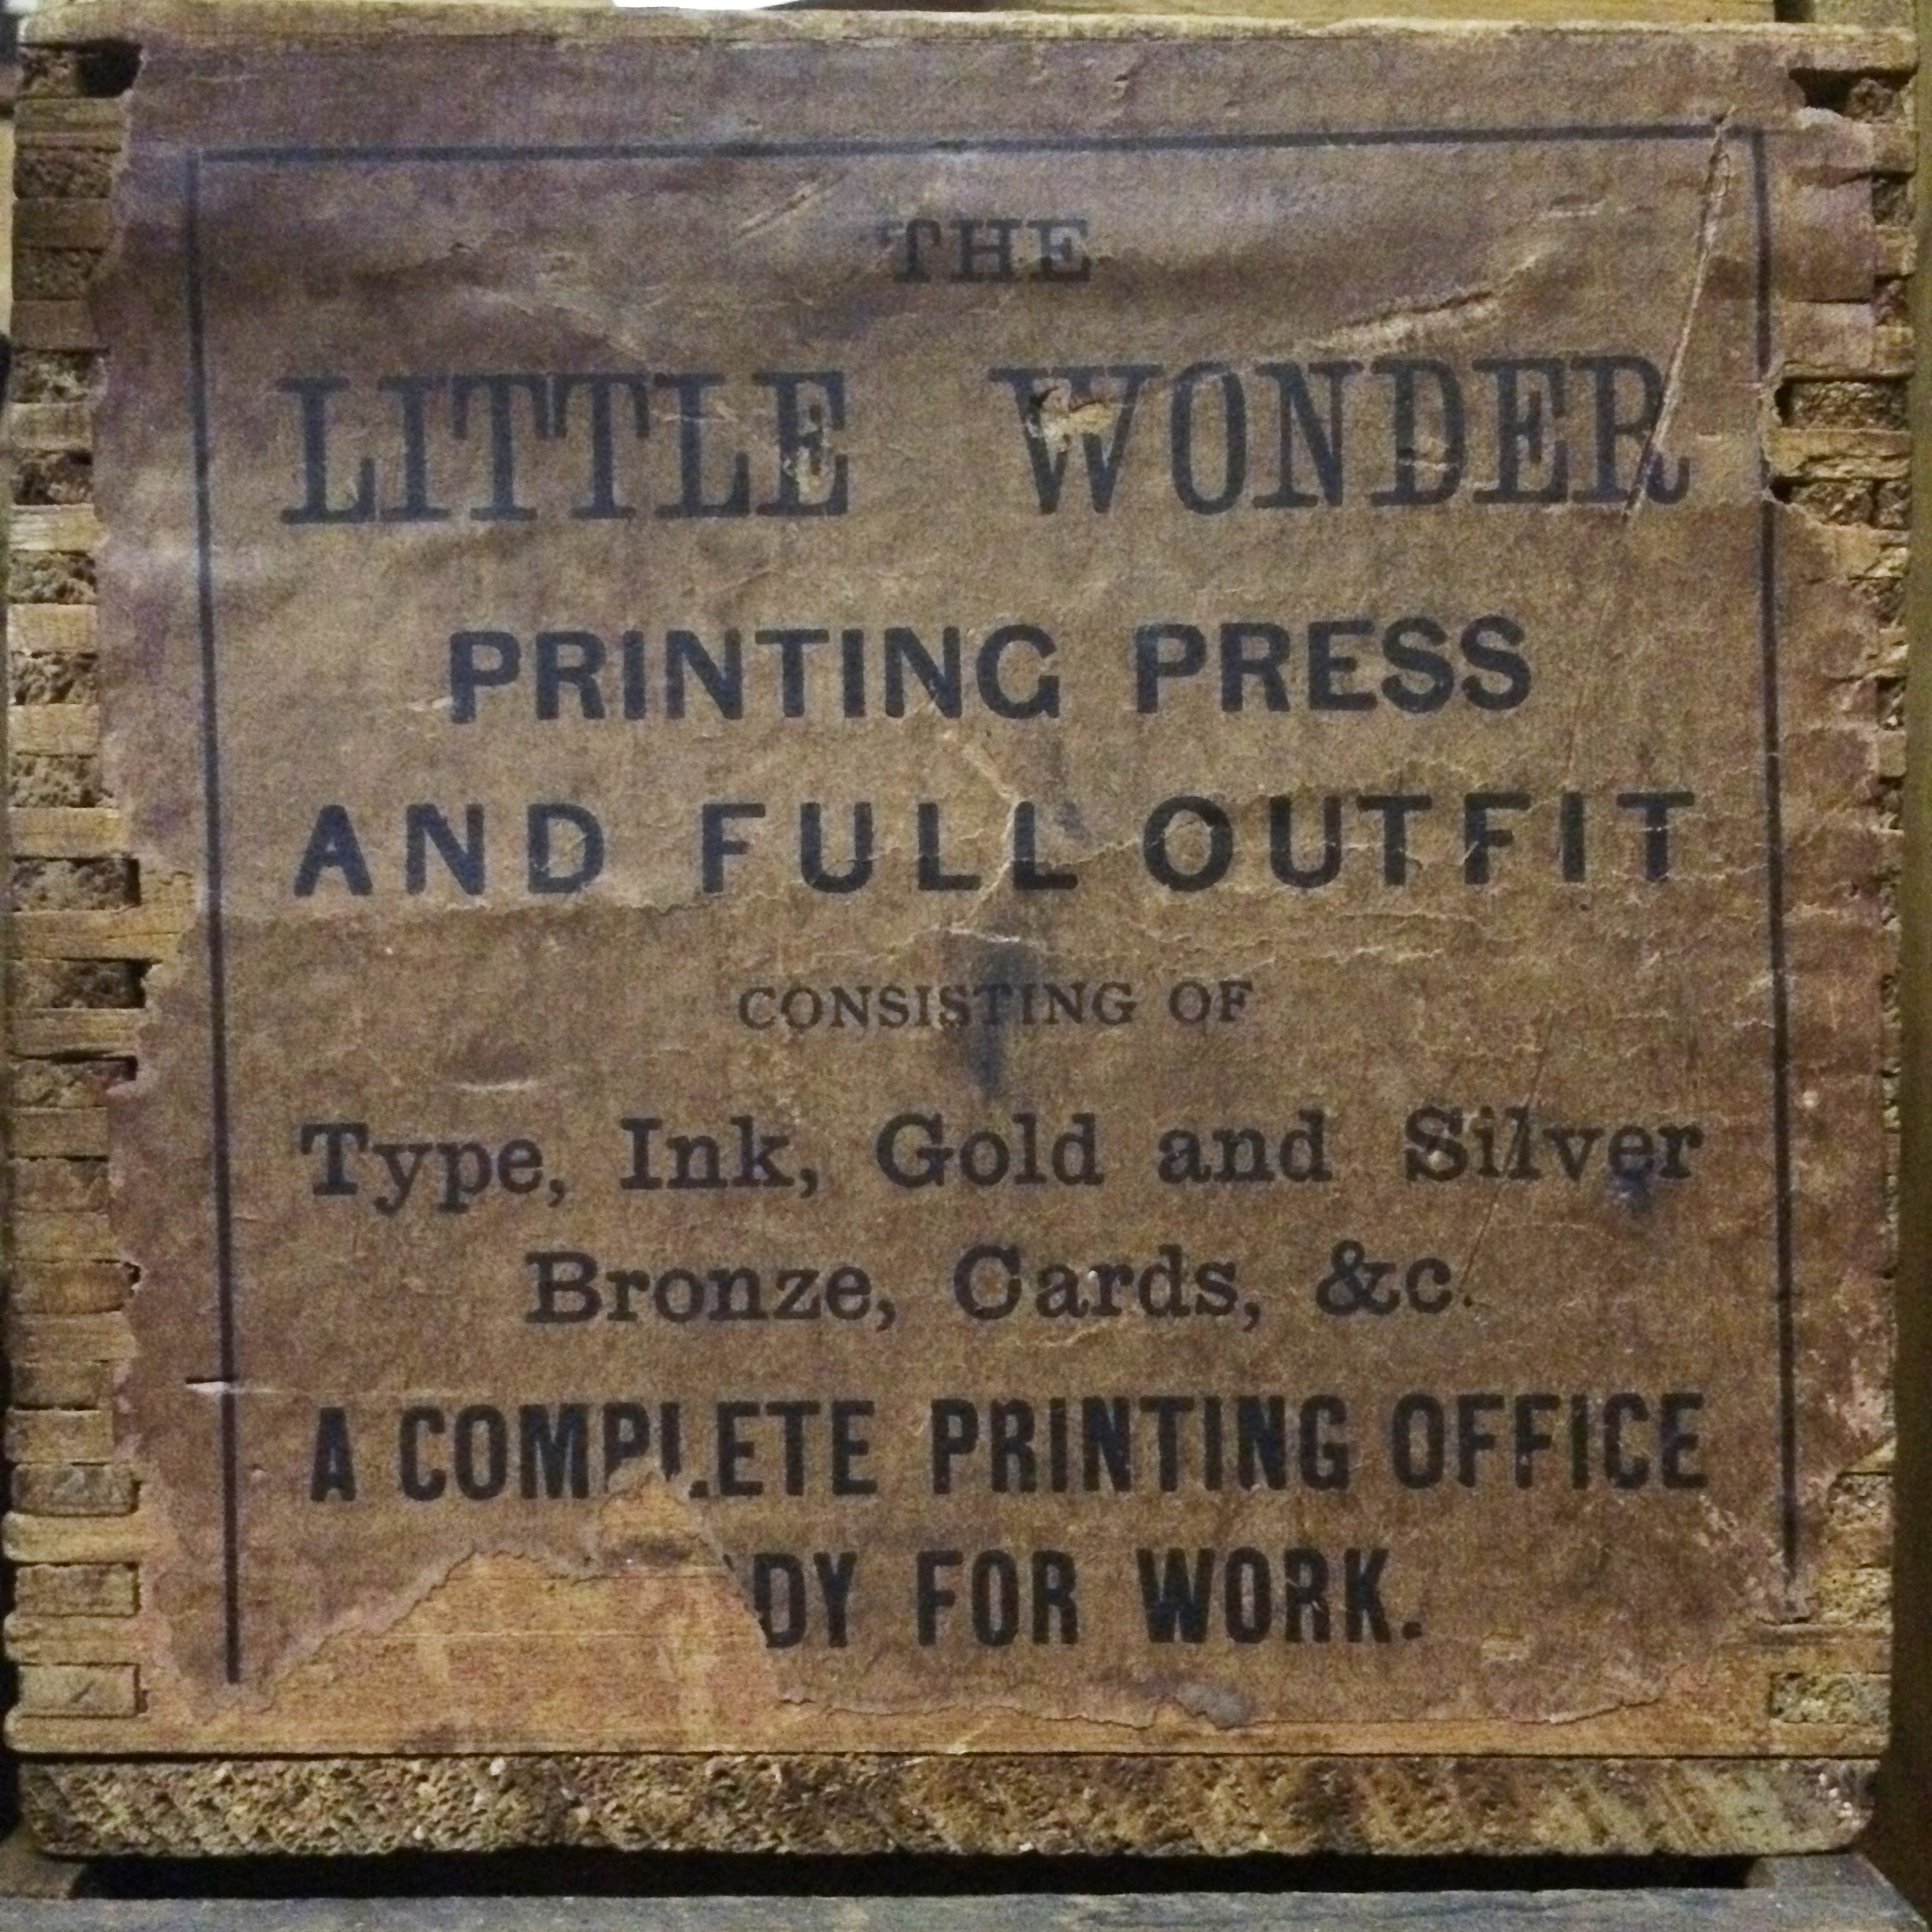 Letterpress Zion: Platen Press Museum